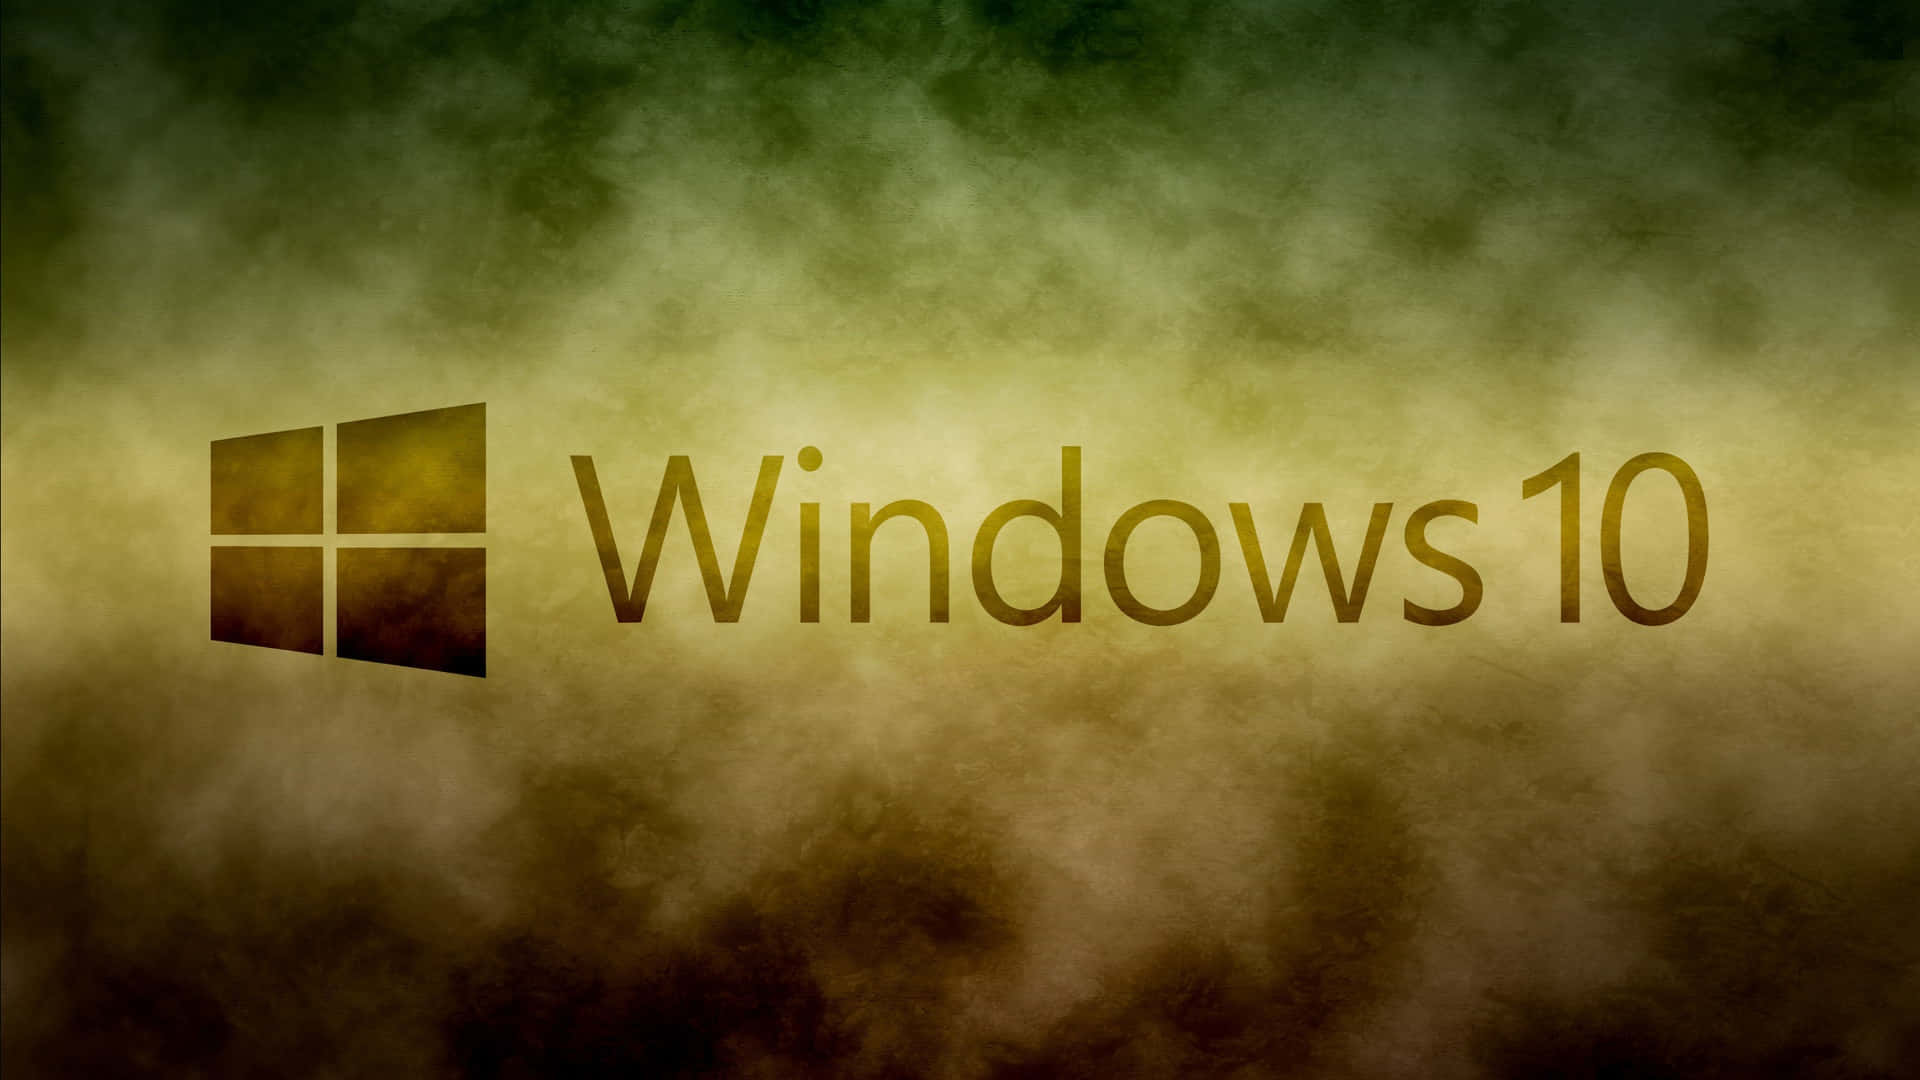 Endynamisk Windows 10-bakgrund